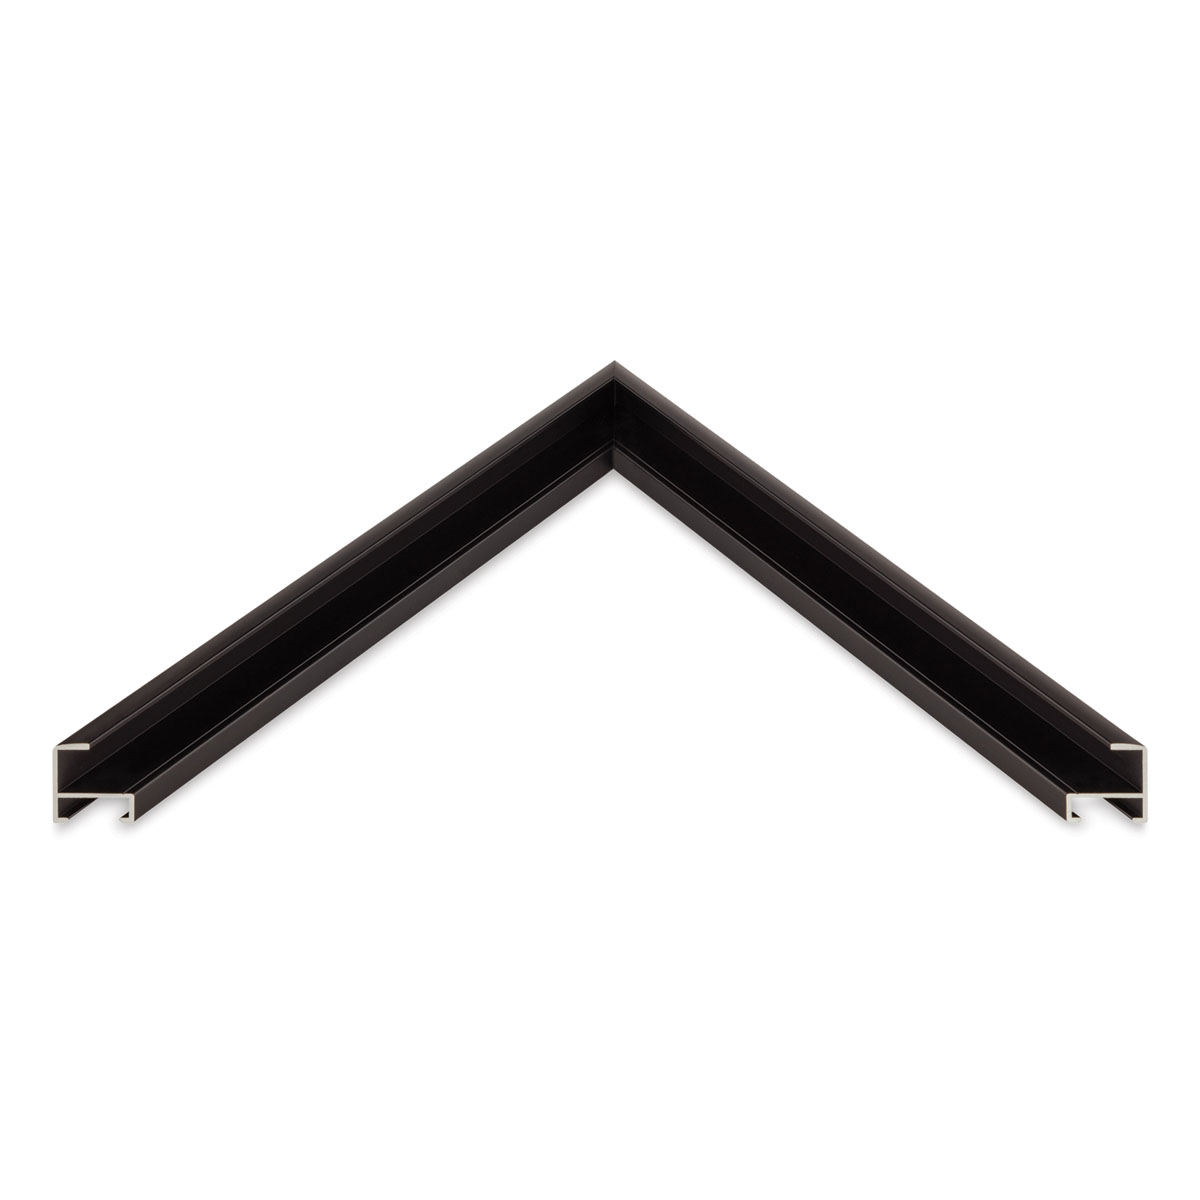 Nielsen Bainbridge Frame Kit - 32'' x 7/16'', Black, 2 Bars